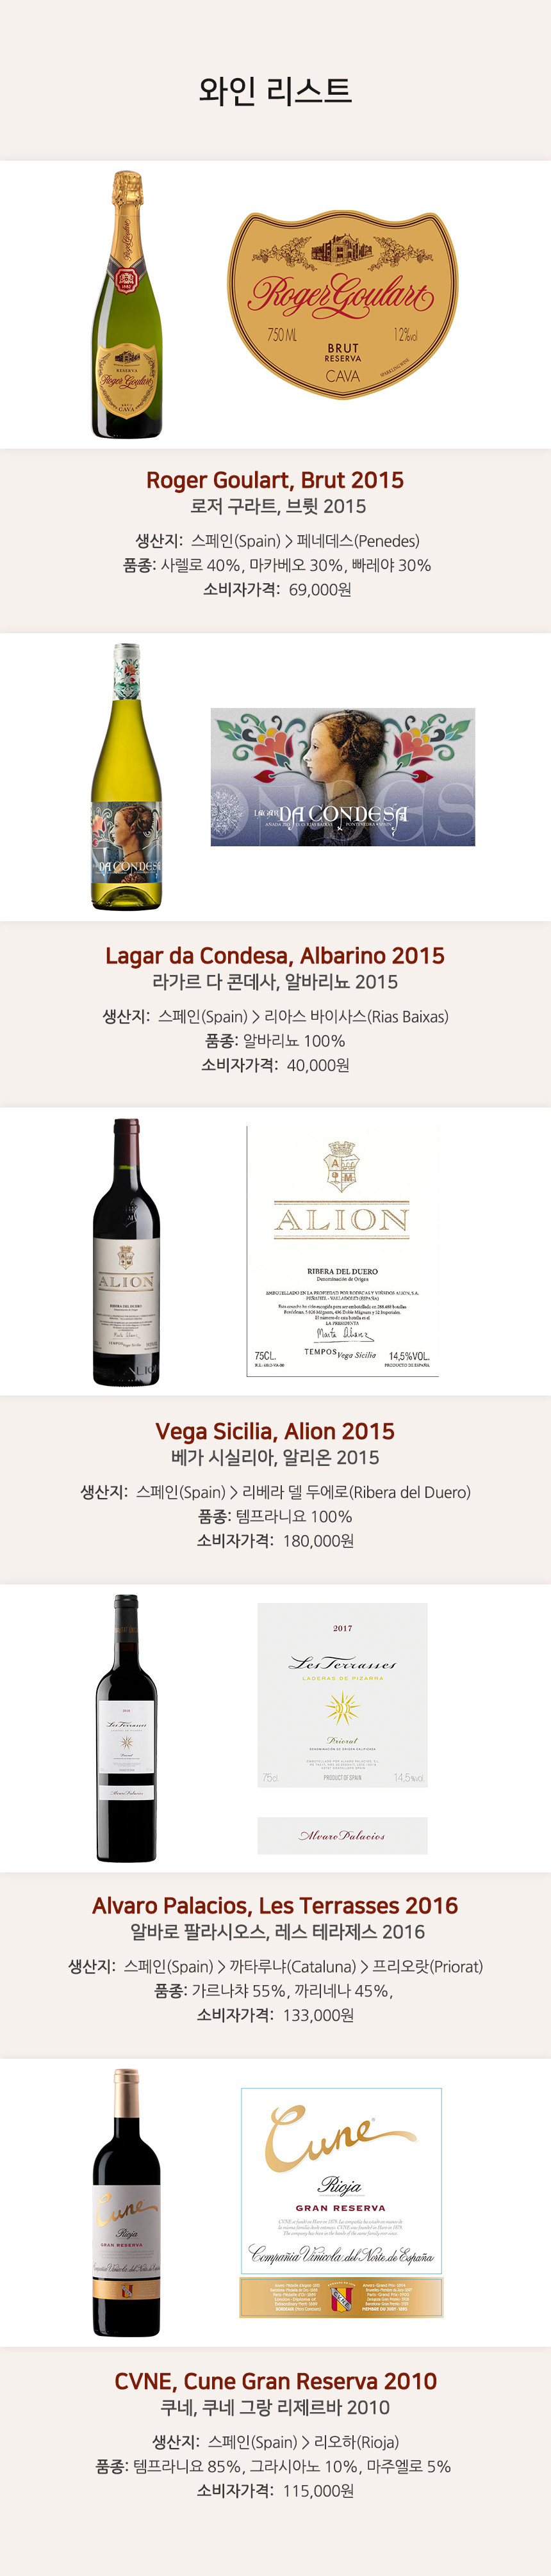 2월 금요시음회 - Premium Spain Wine 와인리스트 / Roger Goulart, Brut 2015(로저 구라트, 브륏 2015), Lagar da Condesa, Albarino 2015(라가르 다 콘데사, 알바리뇨 2015), Vega Sicilia, Alion 2015(베가 시실리아, 알리온 2015), Alvaro Palacios, Les Terrasses 2016(알바로 팔라시오스, 레스 테라제스 2016), CVNE, Cune Gran Reserva 2010(쿠네, 쿠네 그랑 리제르바)